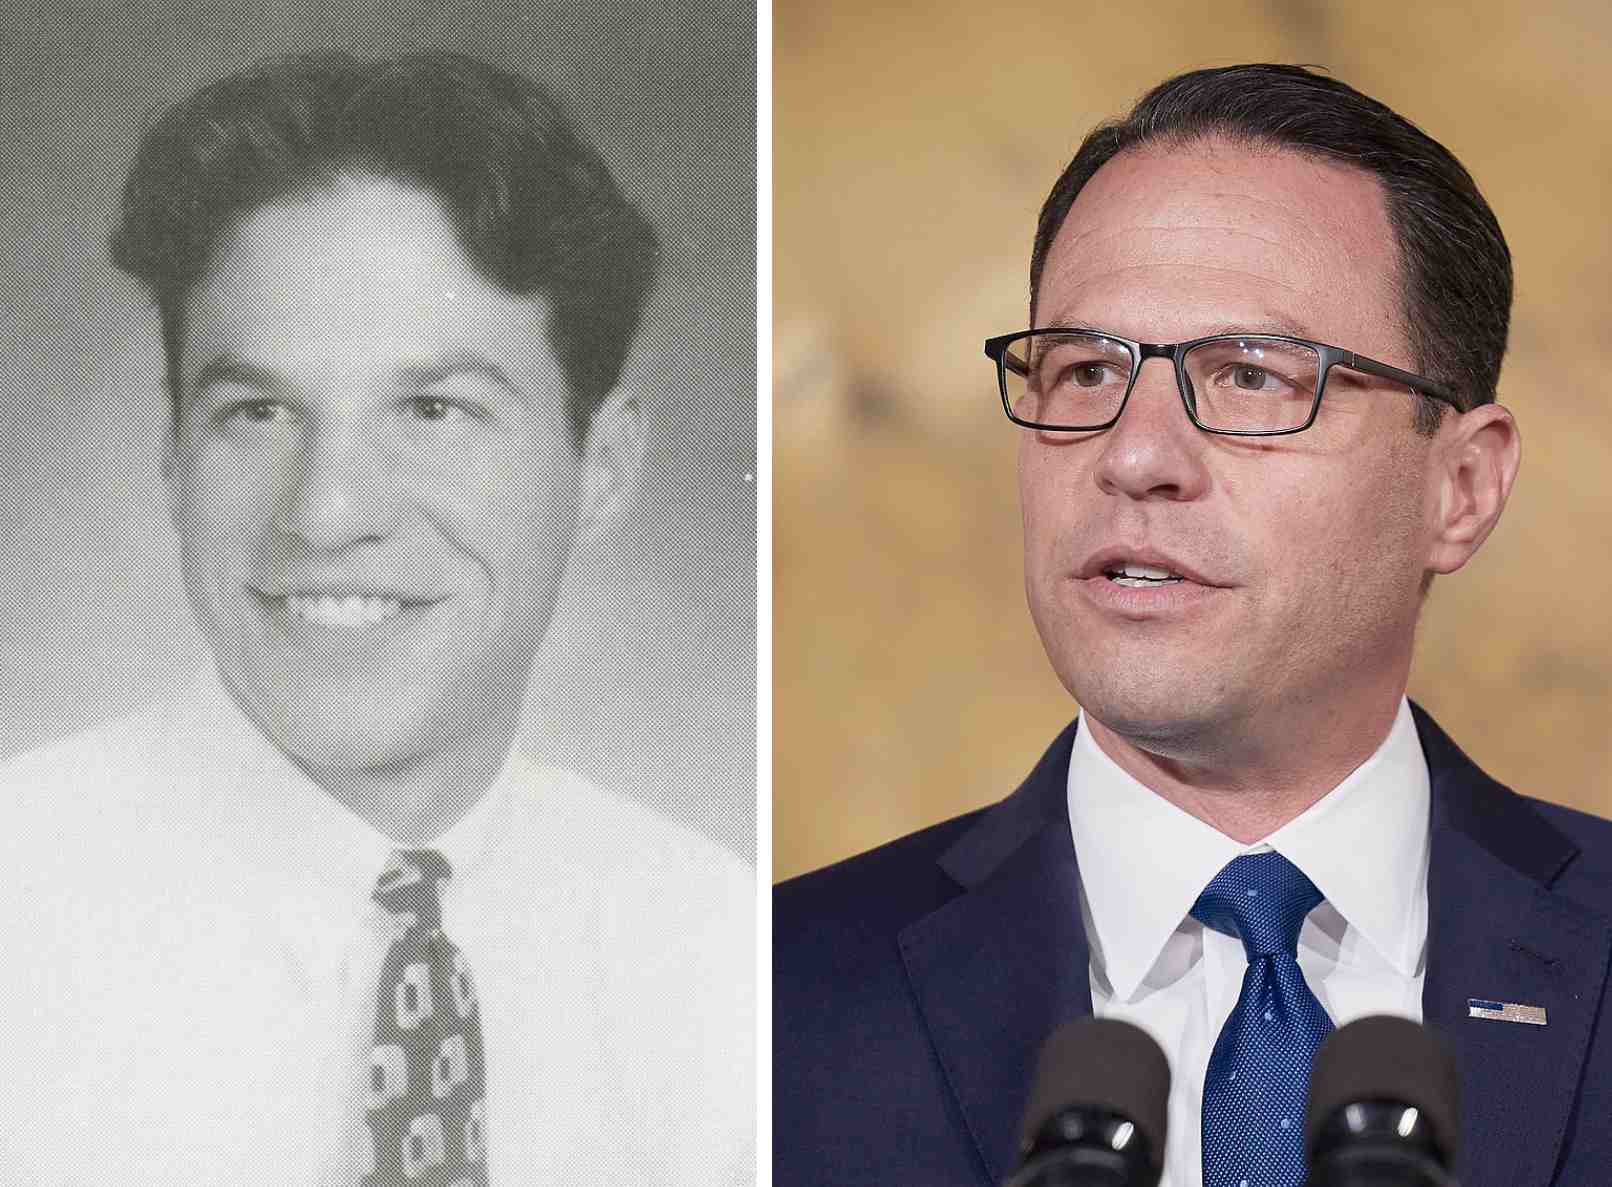 Diptych image of Josh Shapiro's college yearbook photo and of Josh Shapiro as governor. 